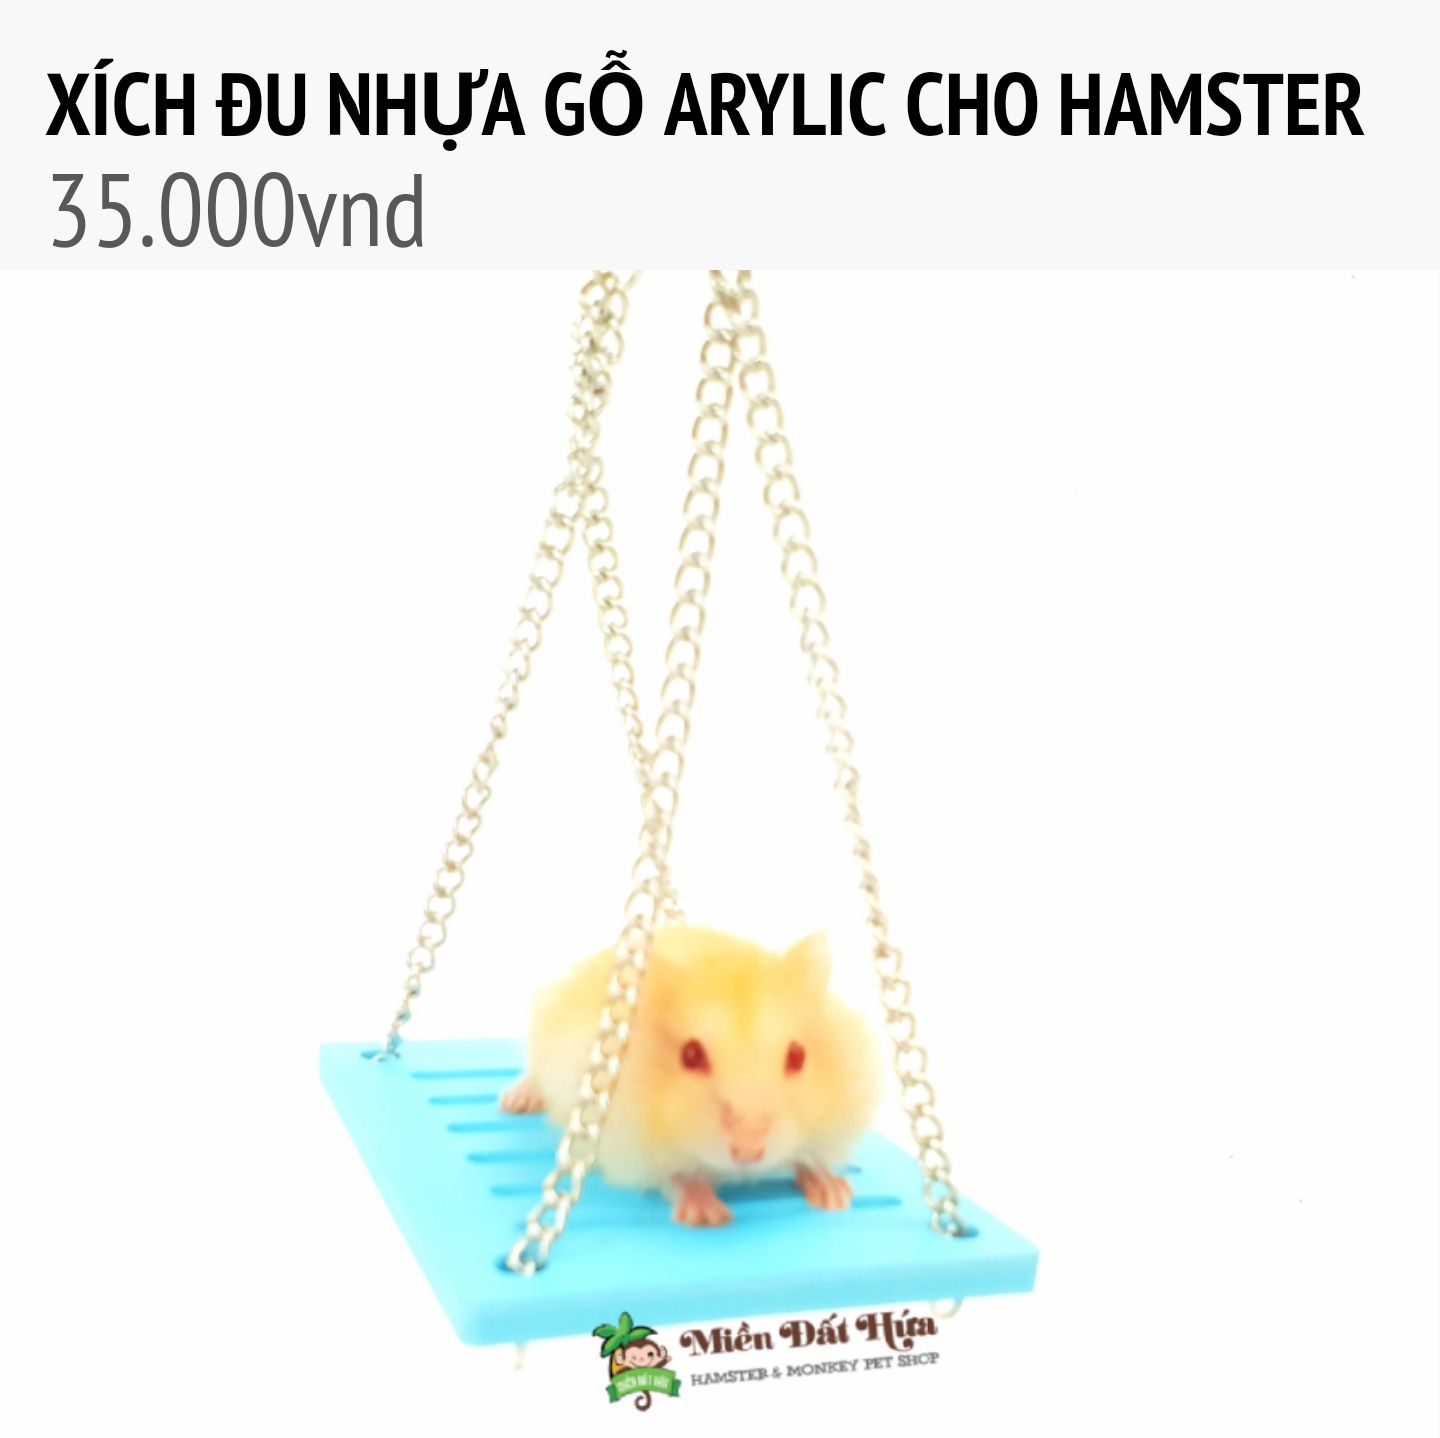 Xich đu nhựa gỗ arylic cho hamster